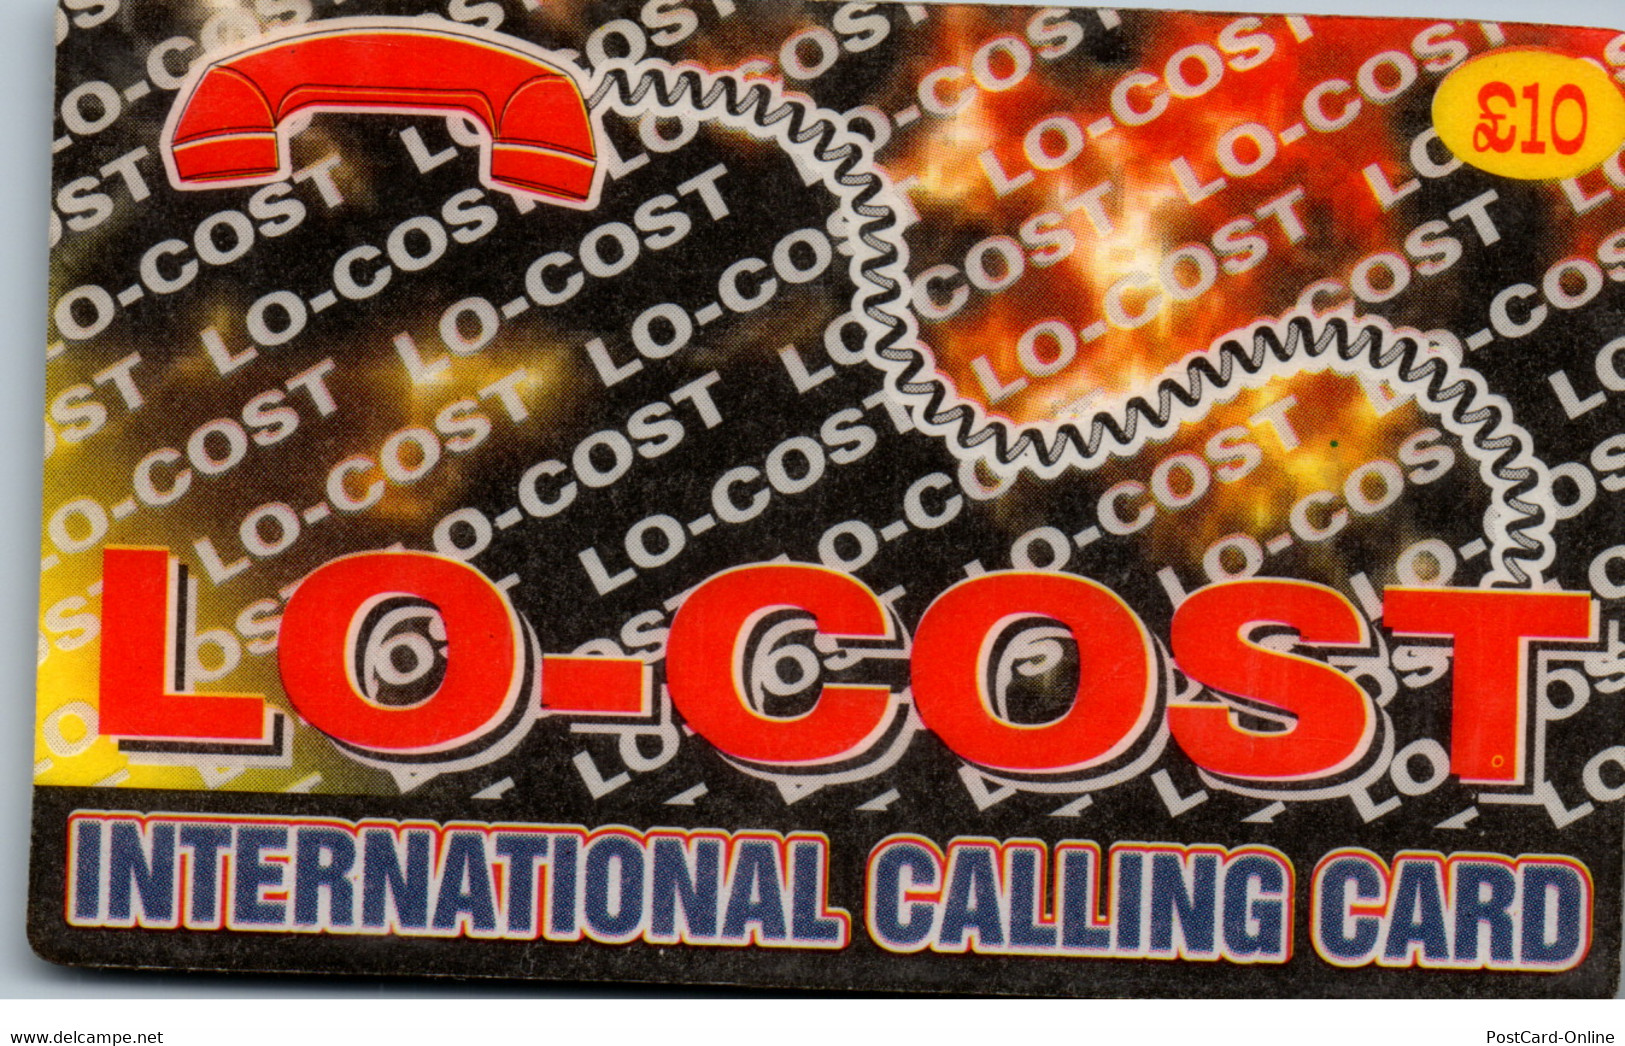 20287 - Großbritannien - Lo Cost Calling Card , Prepaid - BT Cartes Mondiales (Prépayées)